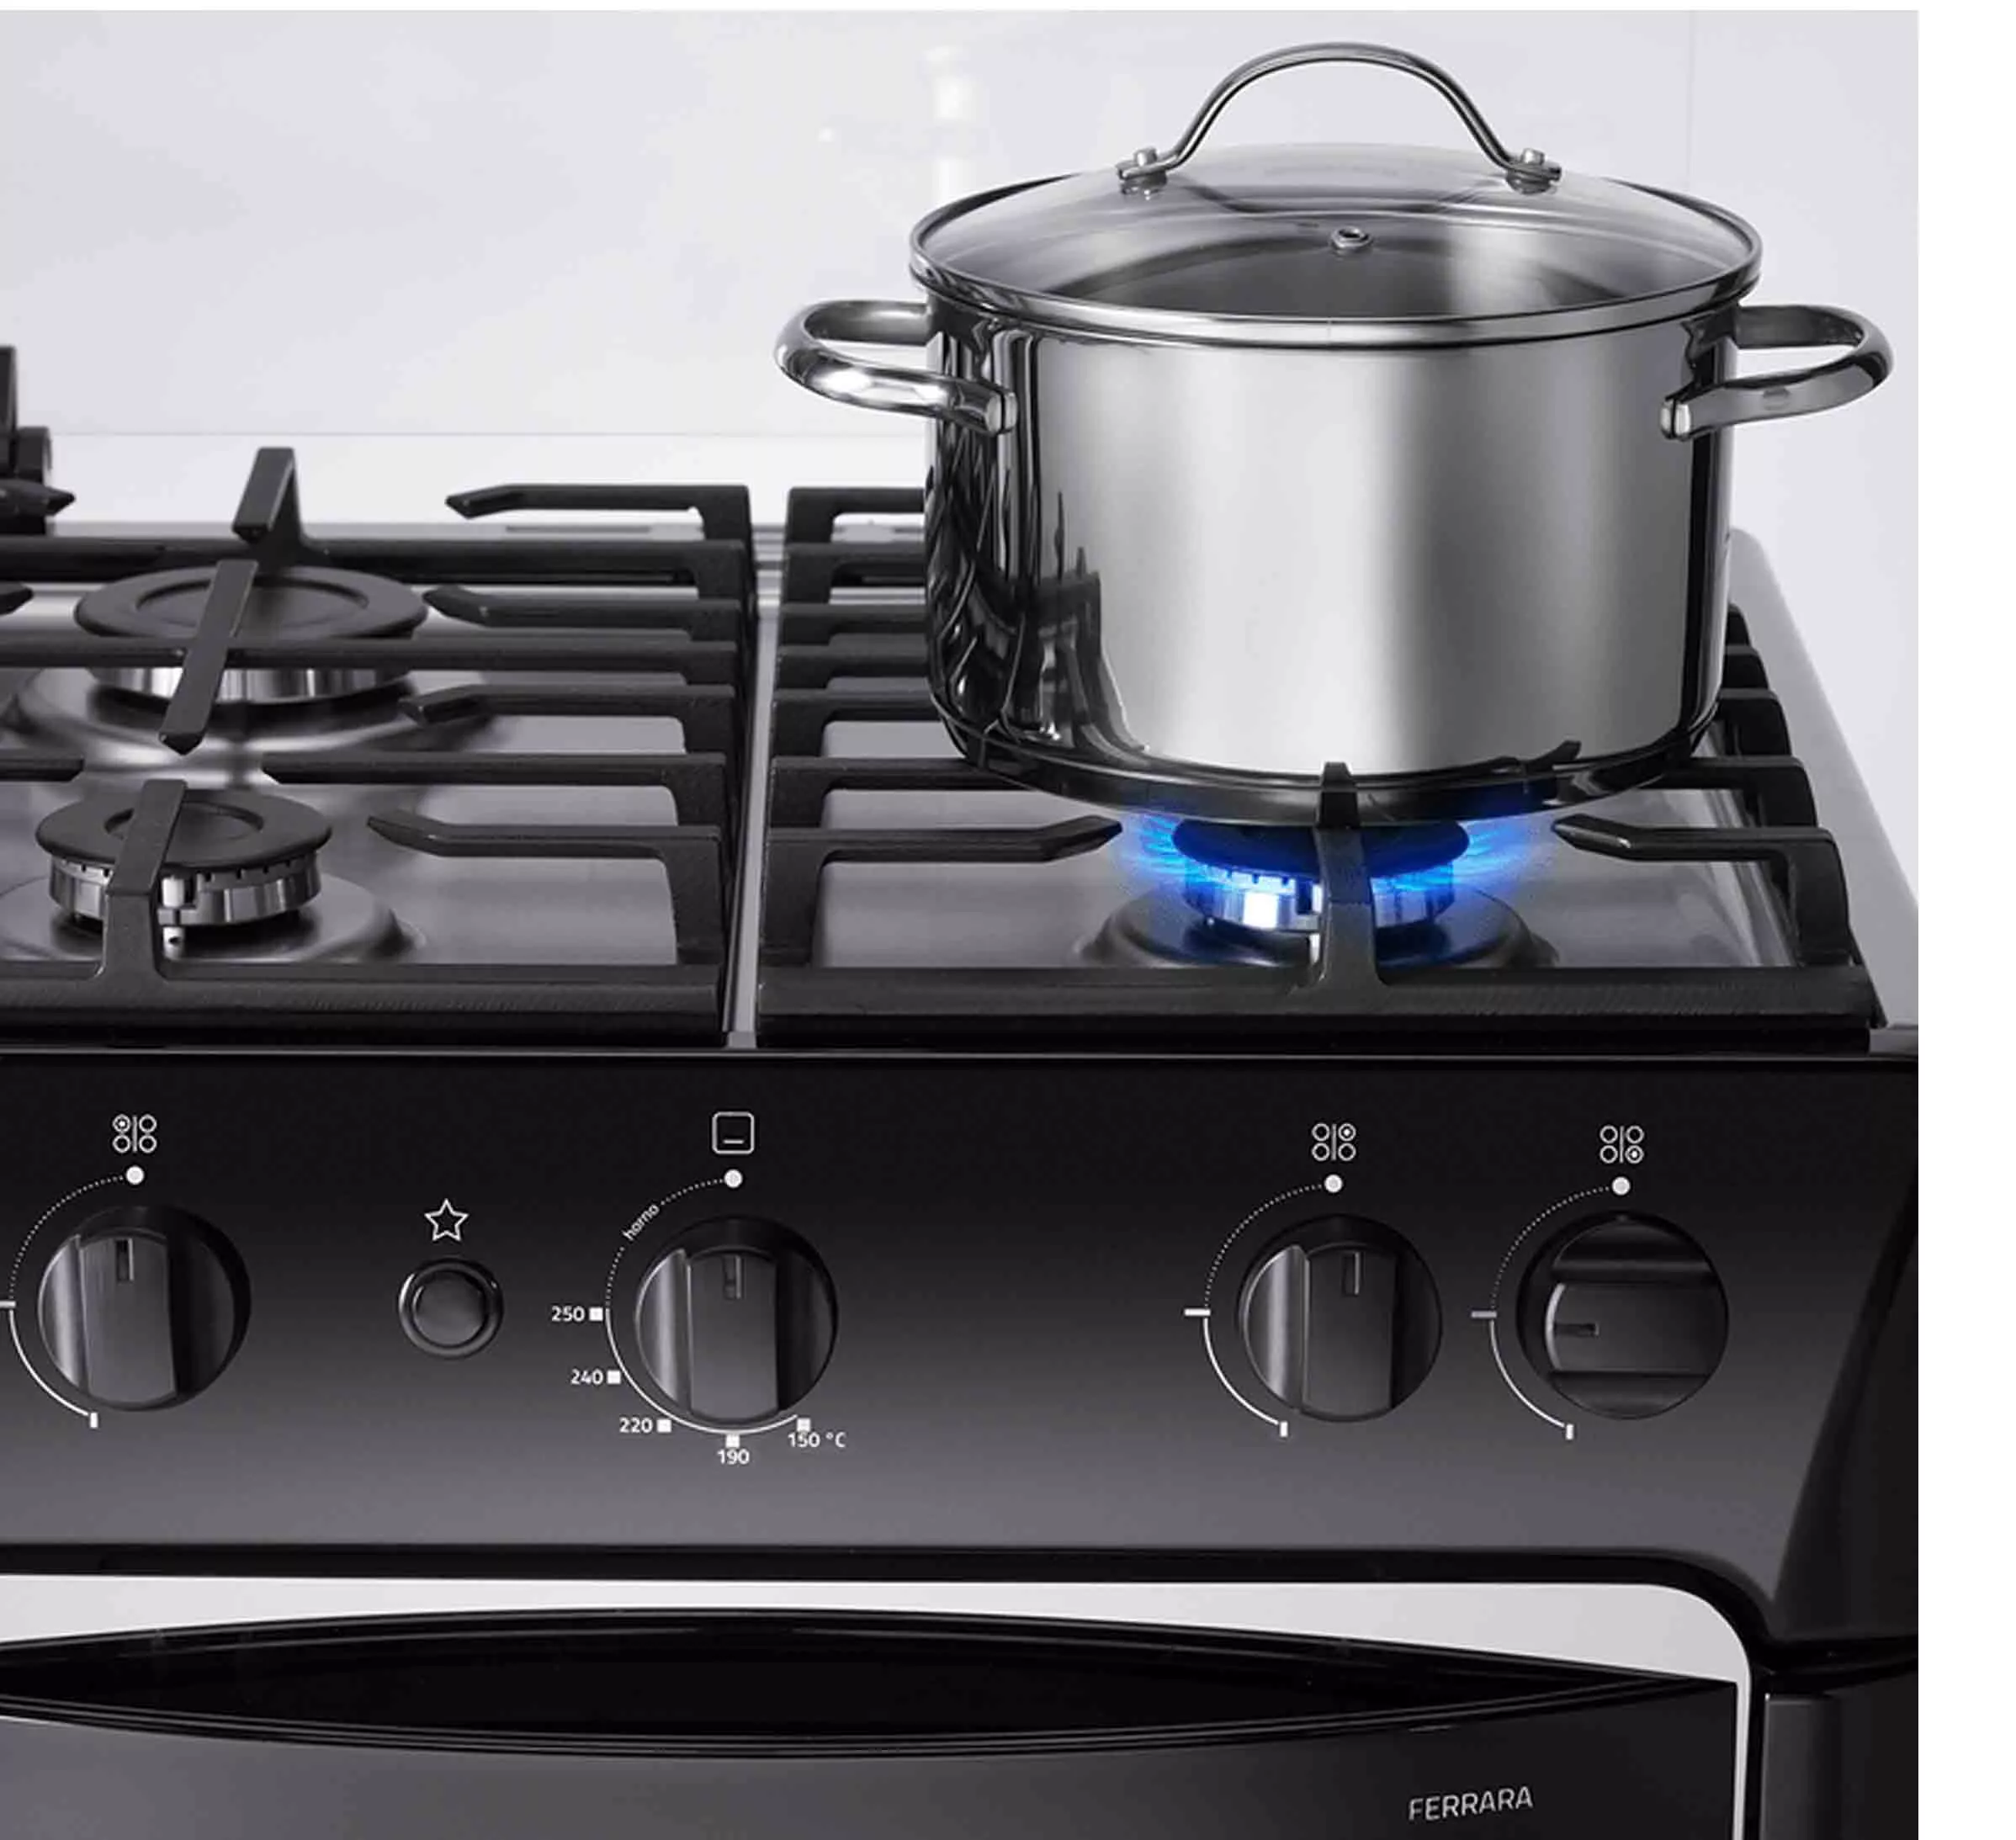 Indurama cocina a gas ferrara zafiro 24” color negro